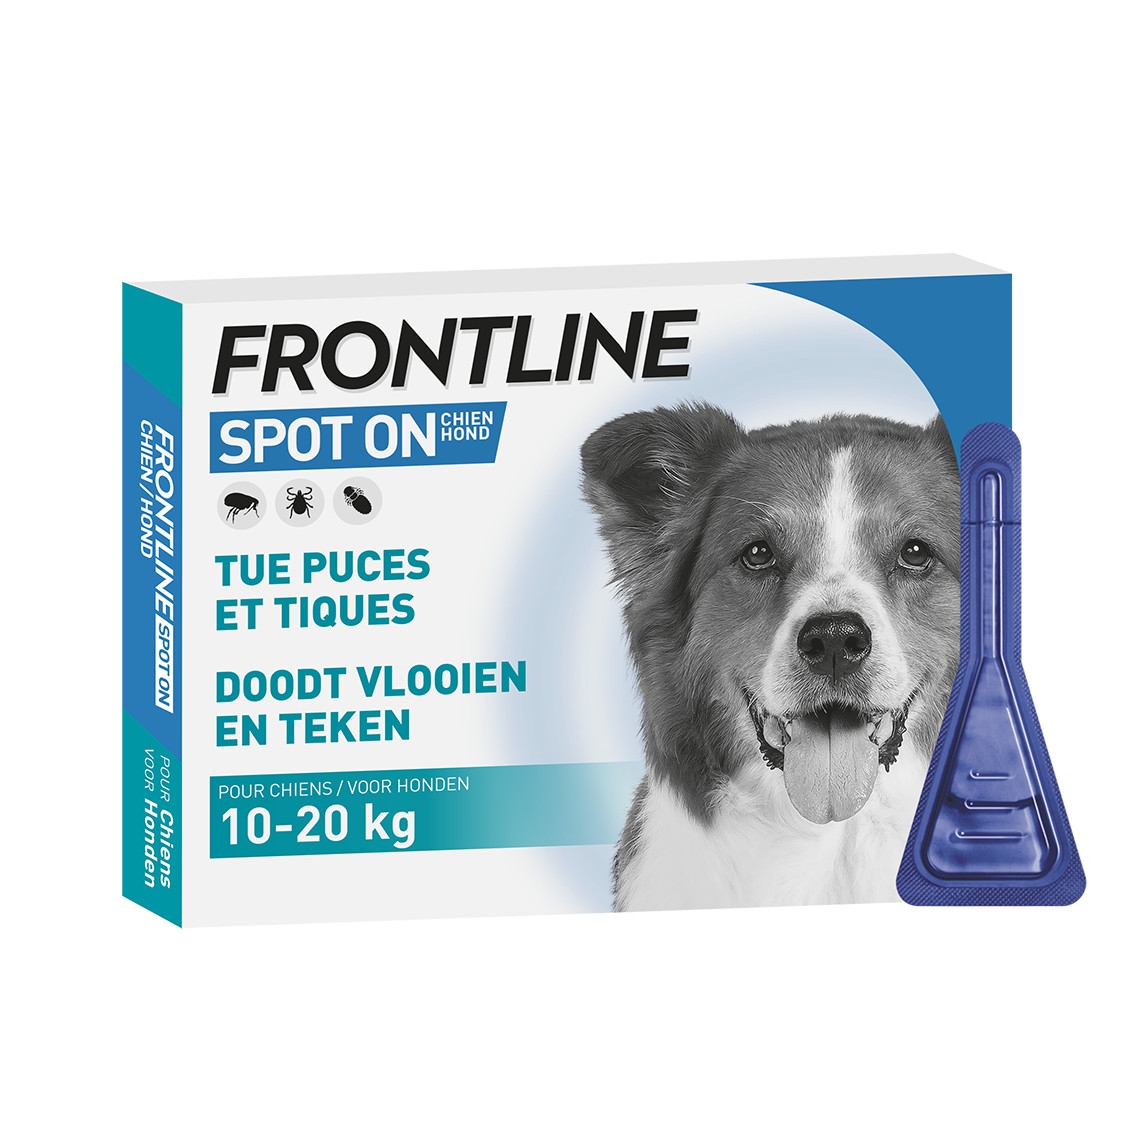 Sneeuwwitje Celsius Het is de bedoeling dat Frontline Spot On hond 10 -20 kg online goedkoop bij